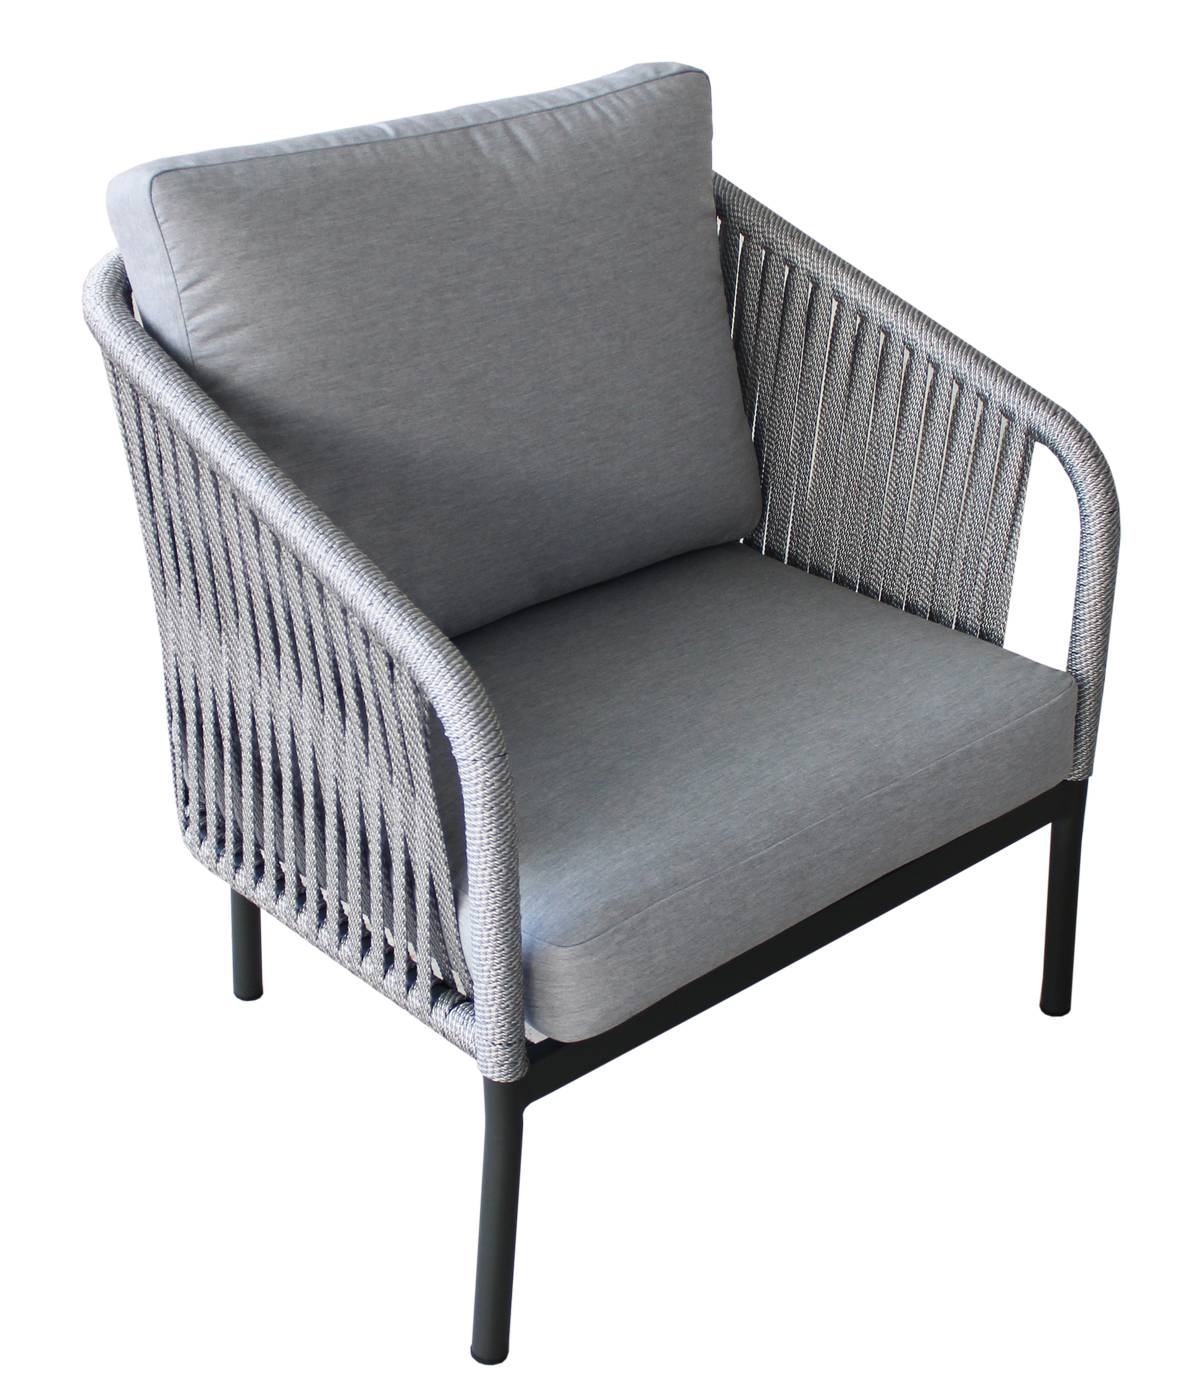 Set Cuerda Yina-7 - Conjunto aluminio color antracita y cuerda color gris: 1 sofá de 2 plazas + 2 sillones + 1 mesa de centro.